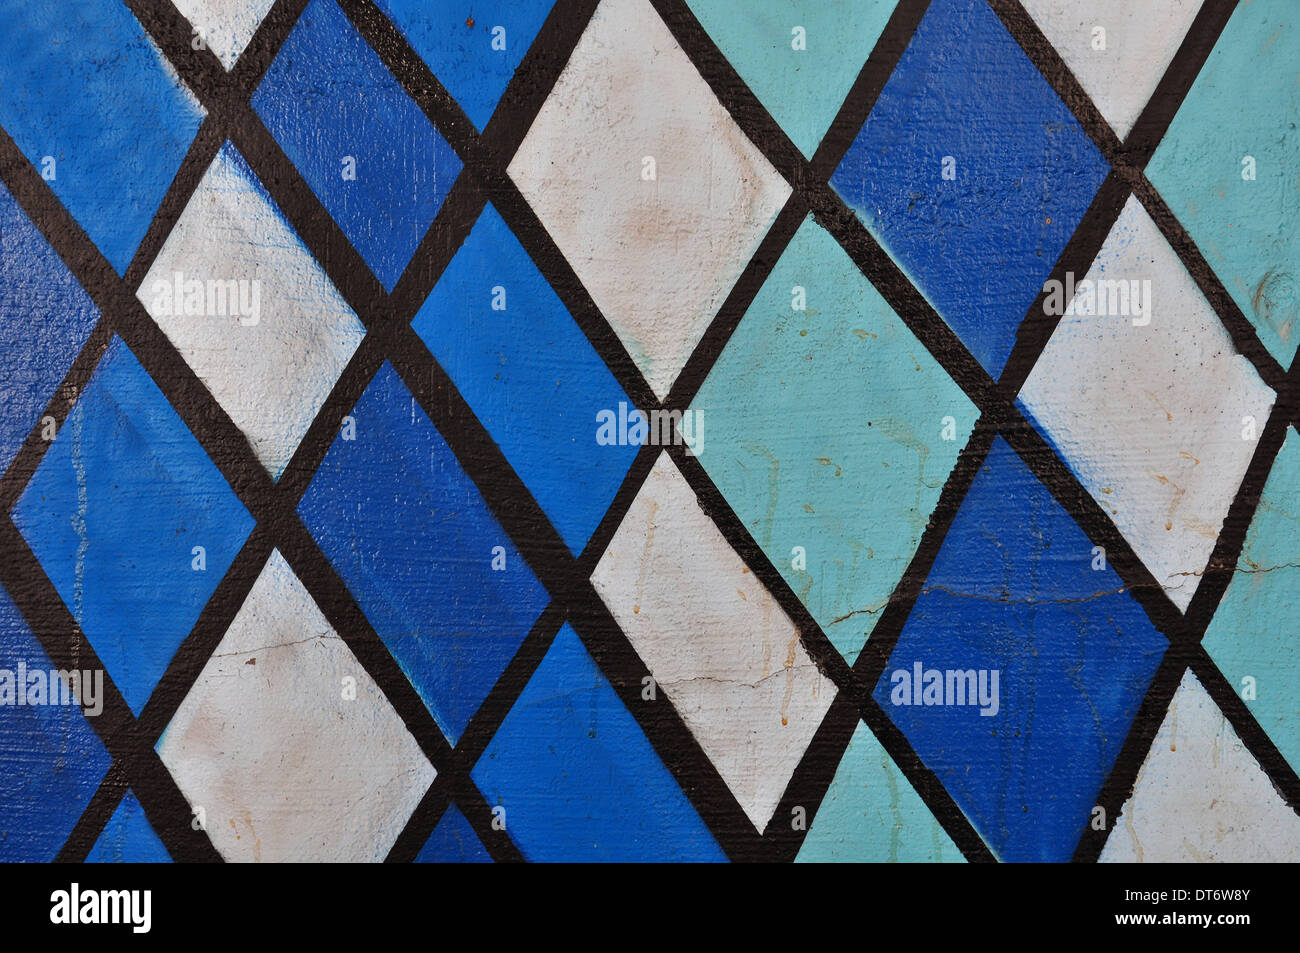 Résumé Peinture Dessin de formes géométriques dans des tons de bleu. Texture Graffiti macro. Banque D'Images